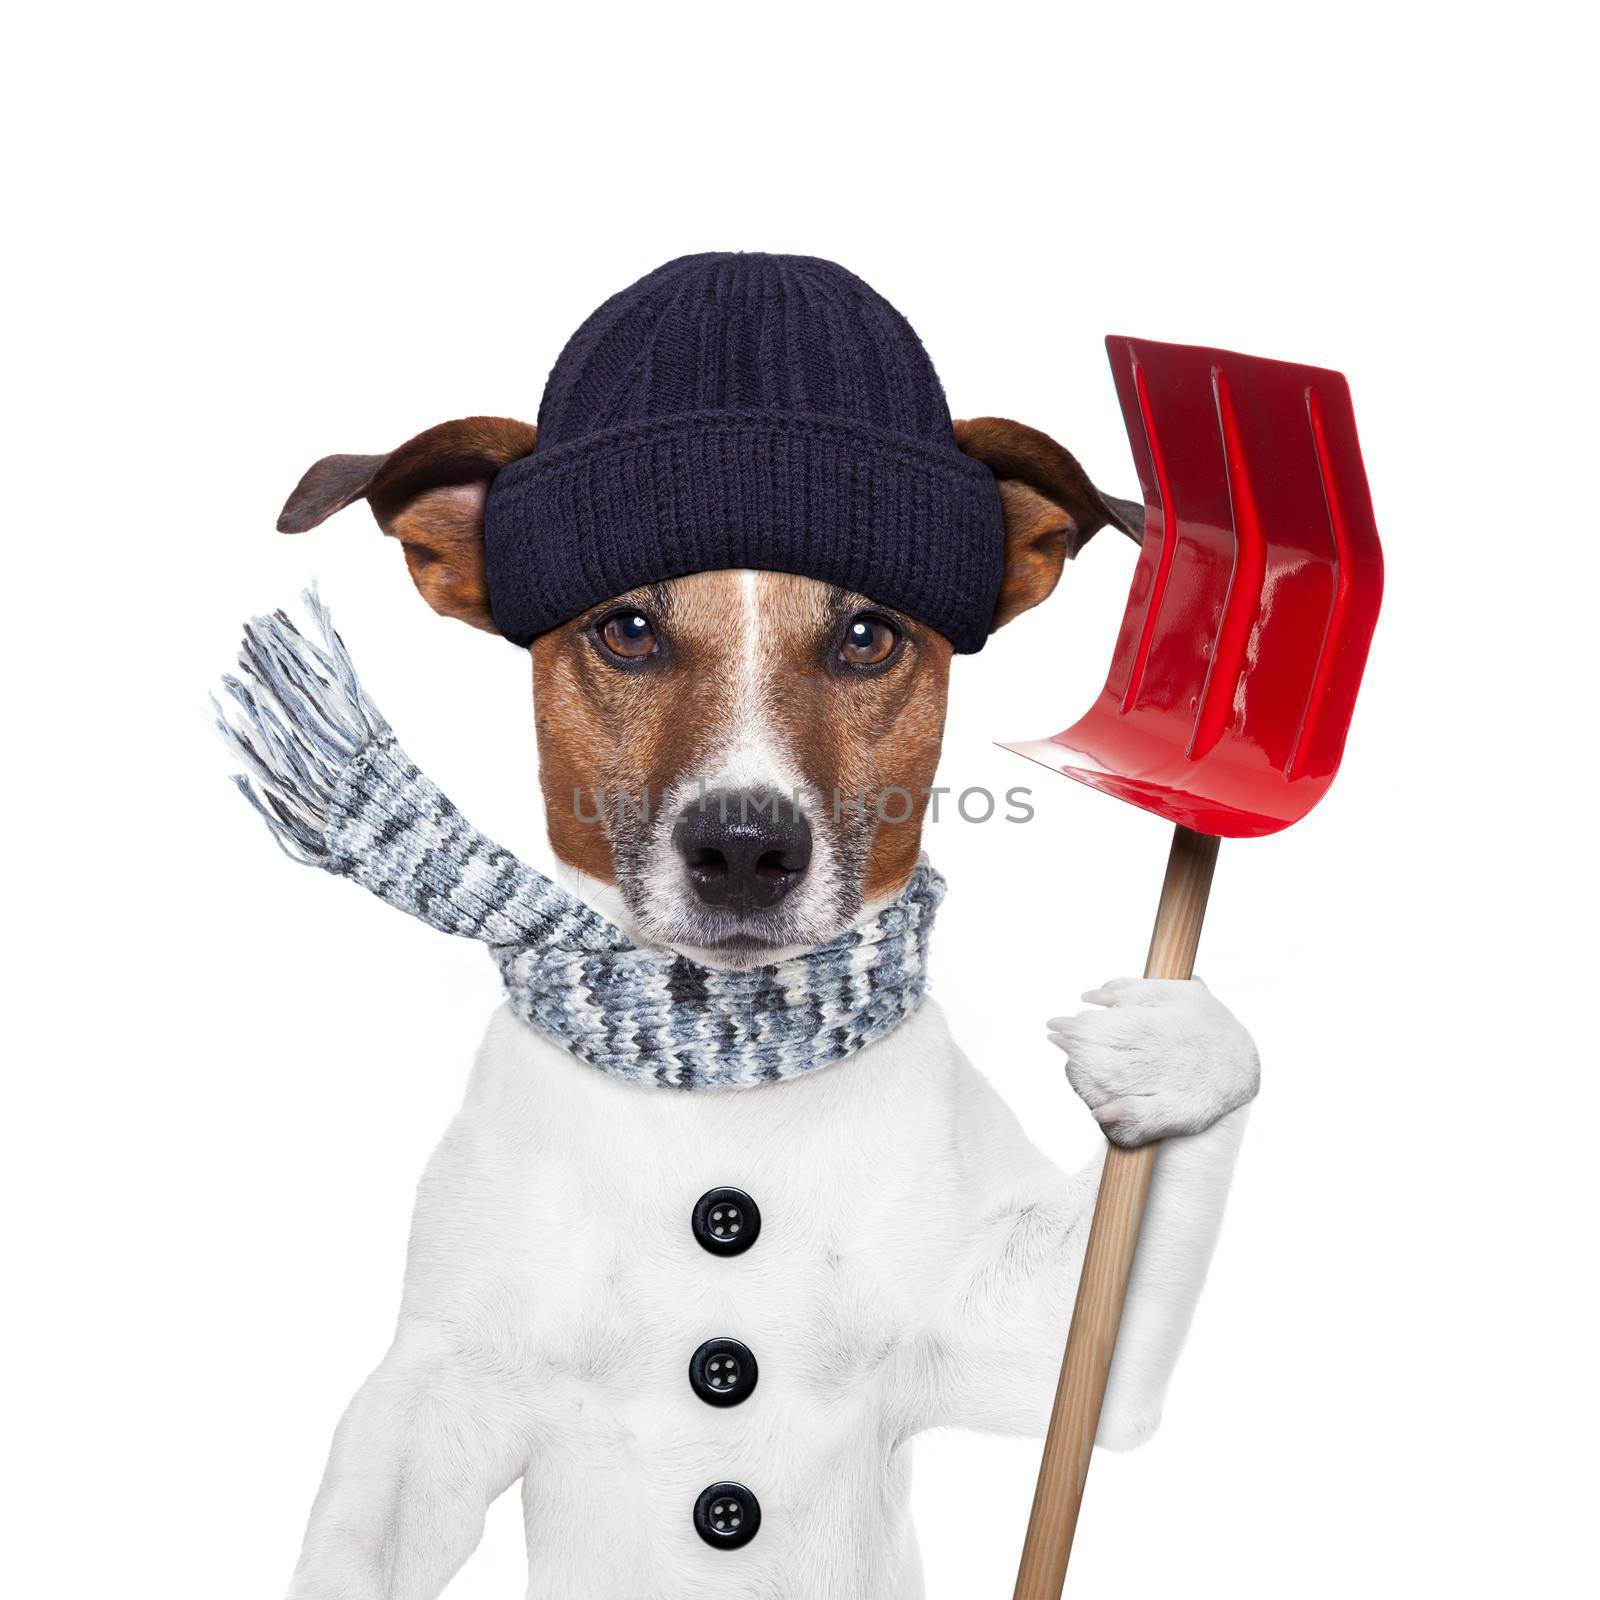  winter dog shovel snow by Brosch